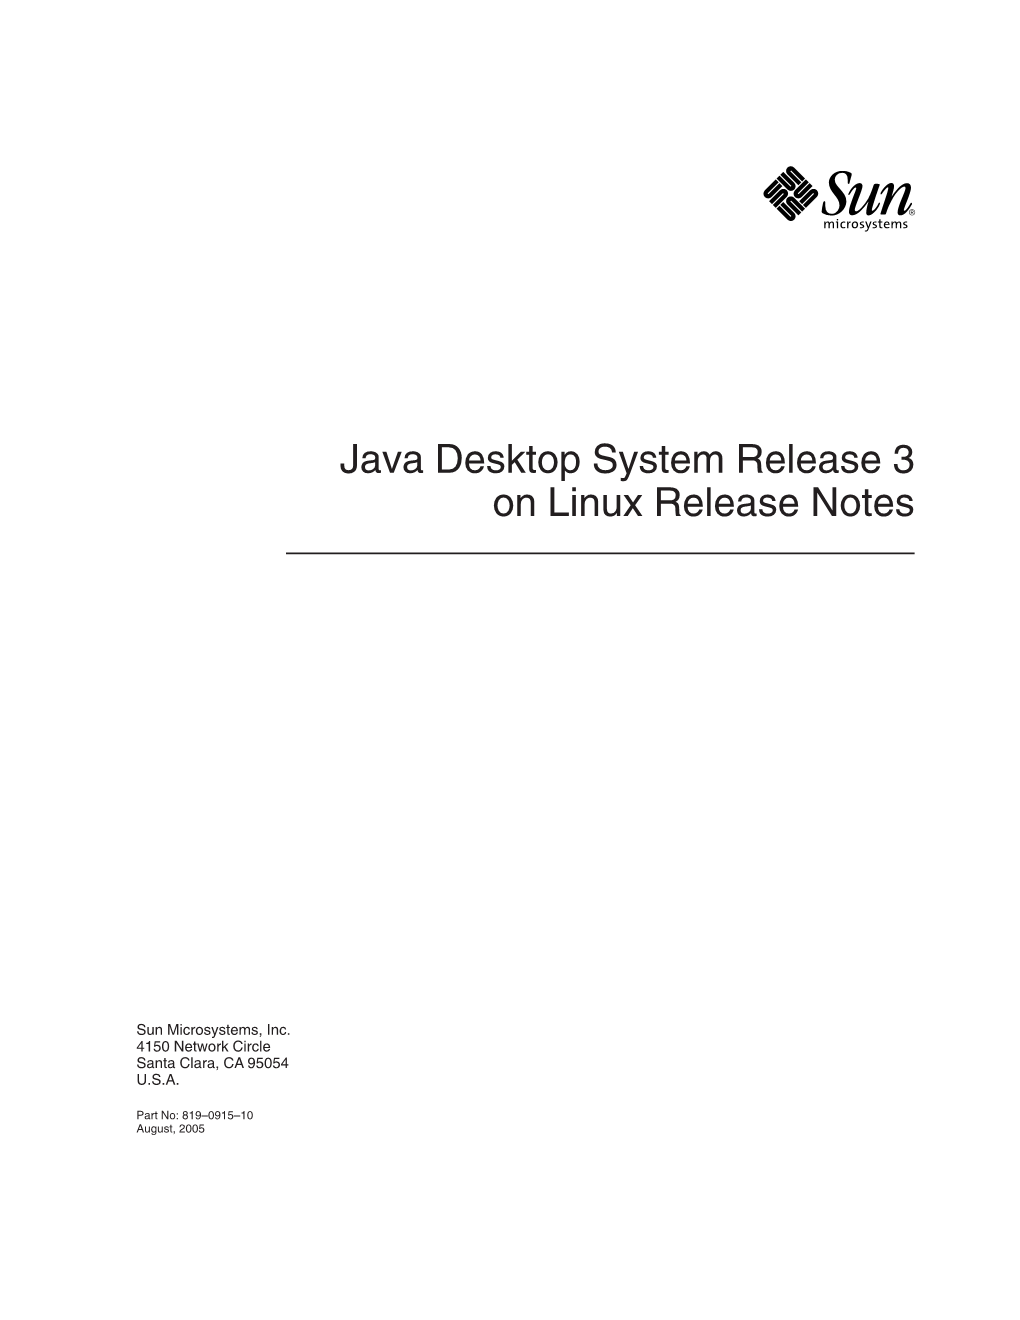 Java Desktop System Release 3 on Linux Release Notes